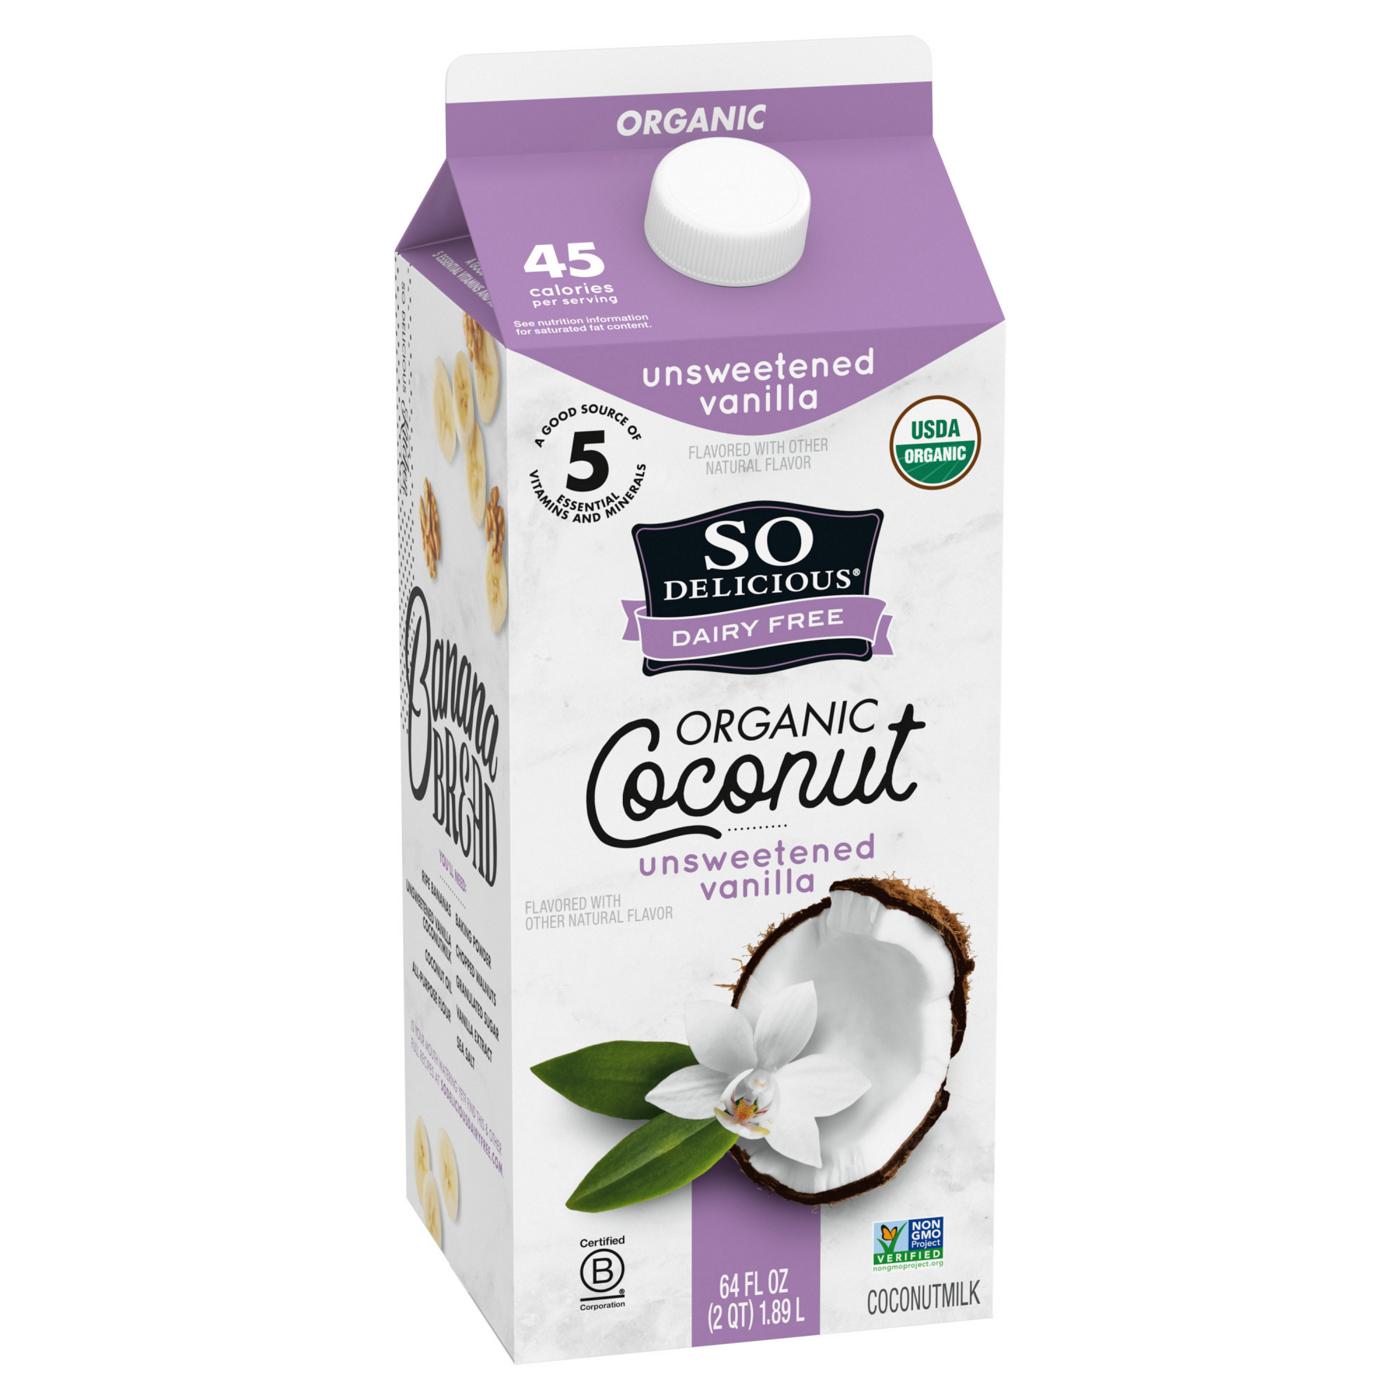 SO DELICIOUS So Delicious Dairy Free Shelf-Stable Coconut Milk,  Unsweetened, Vanilla, Vegan, Non-GMO Project Verified, 1 Quart